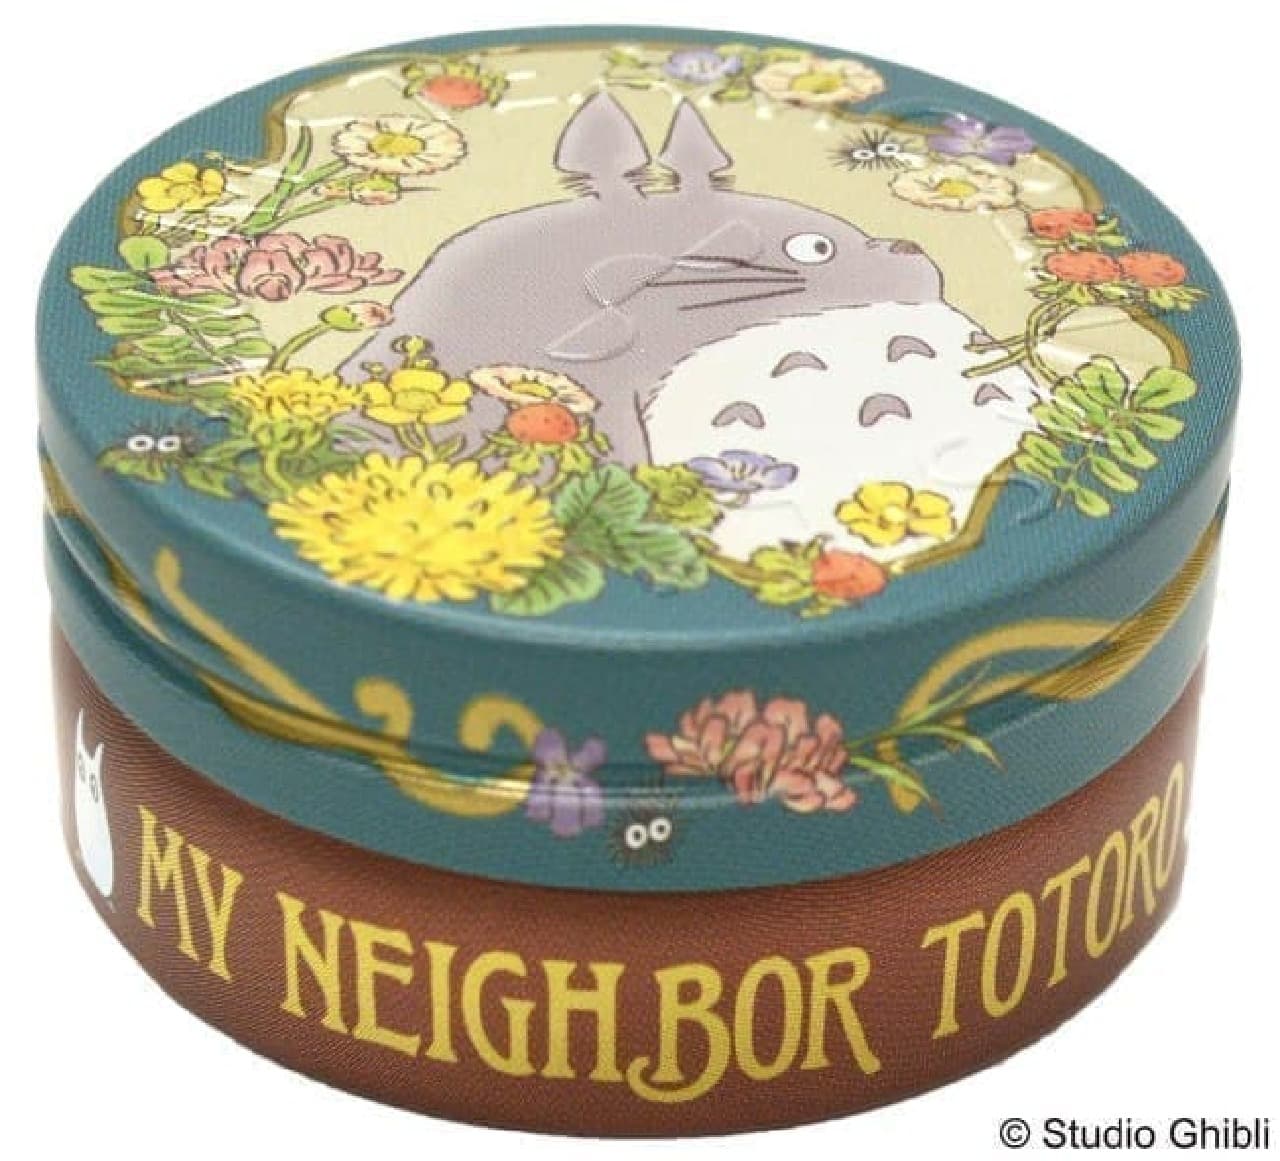 My Neighbor Totoro Steam Cream Wildflowers and Totoro mini